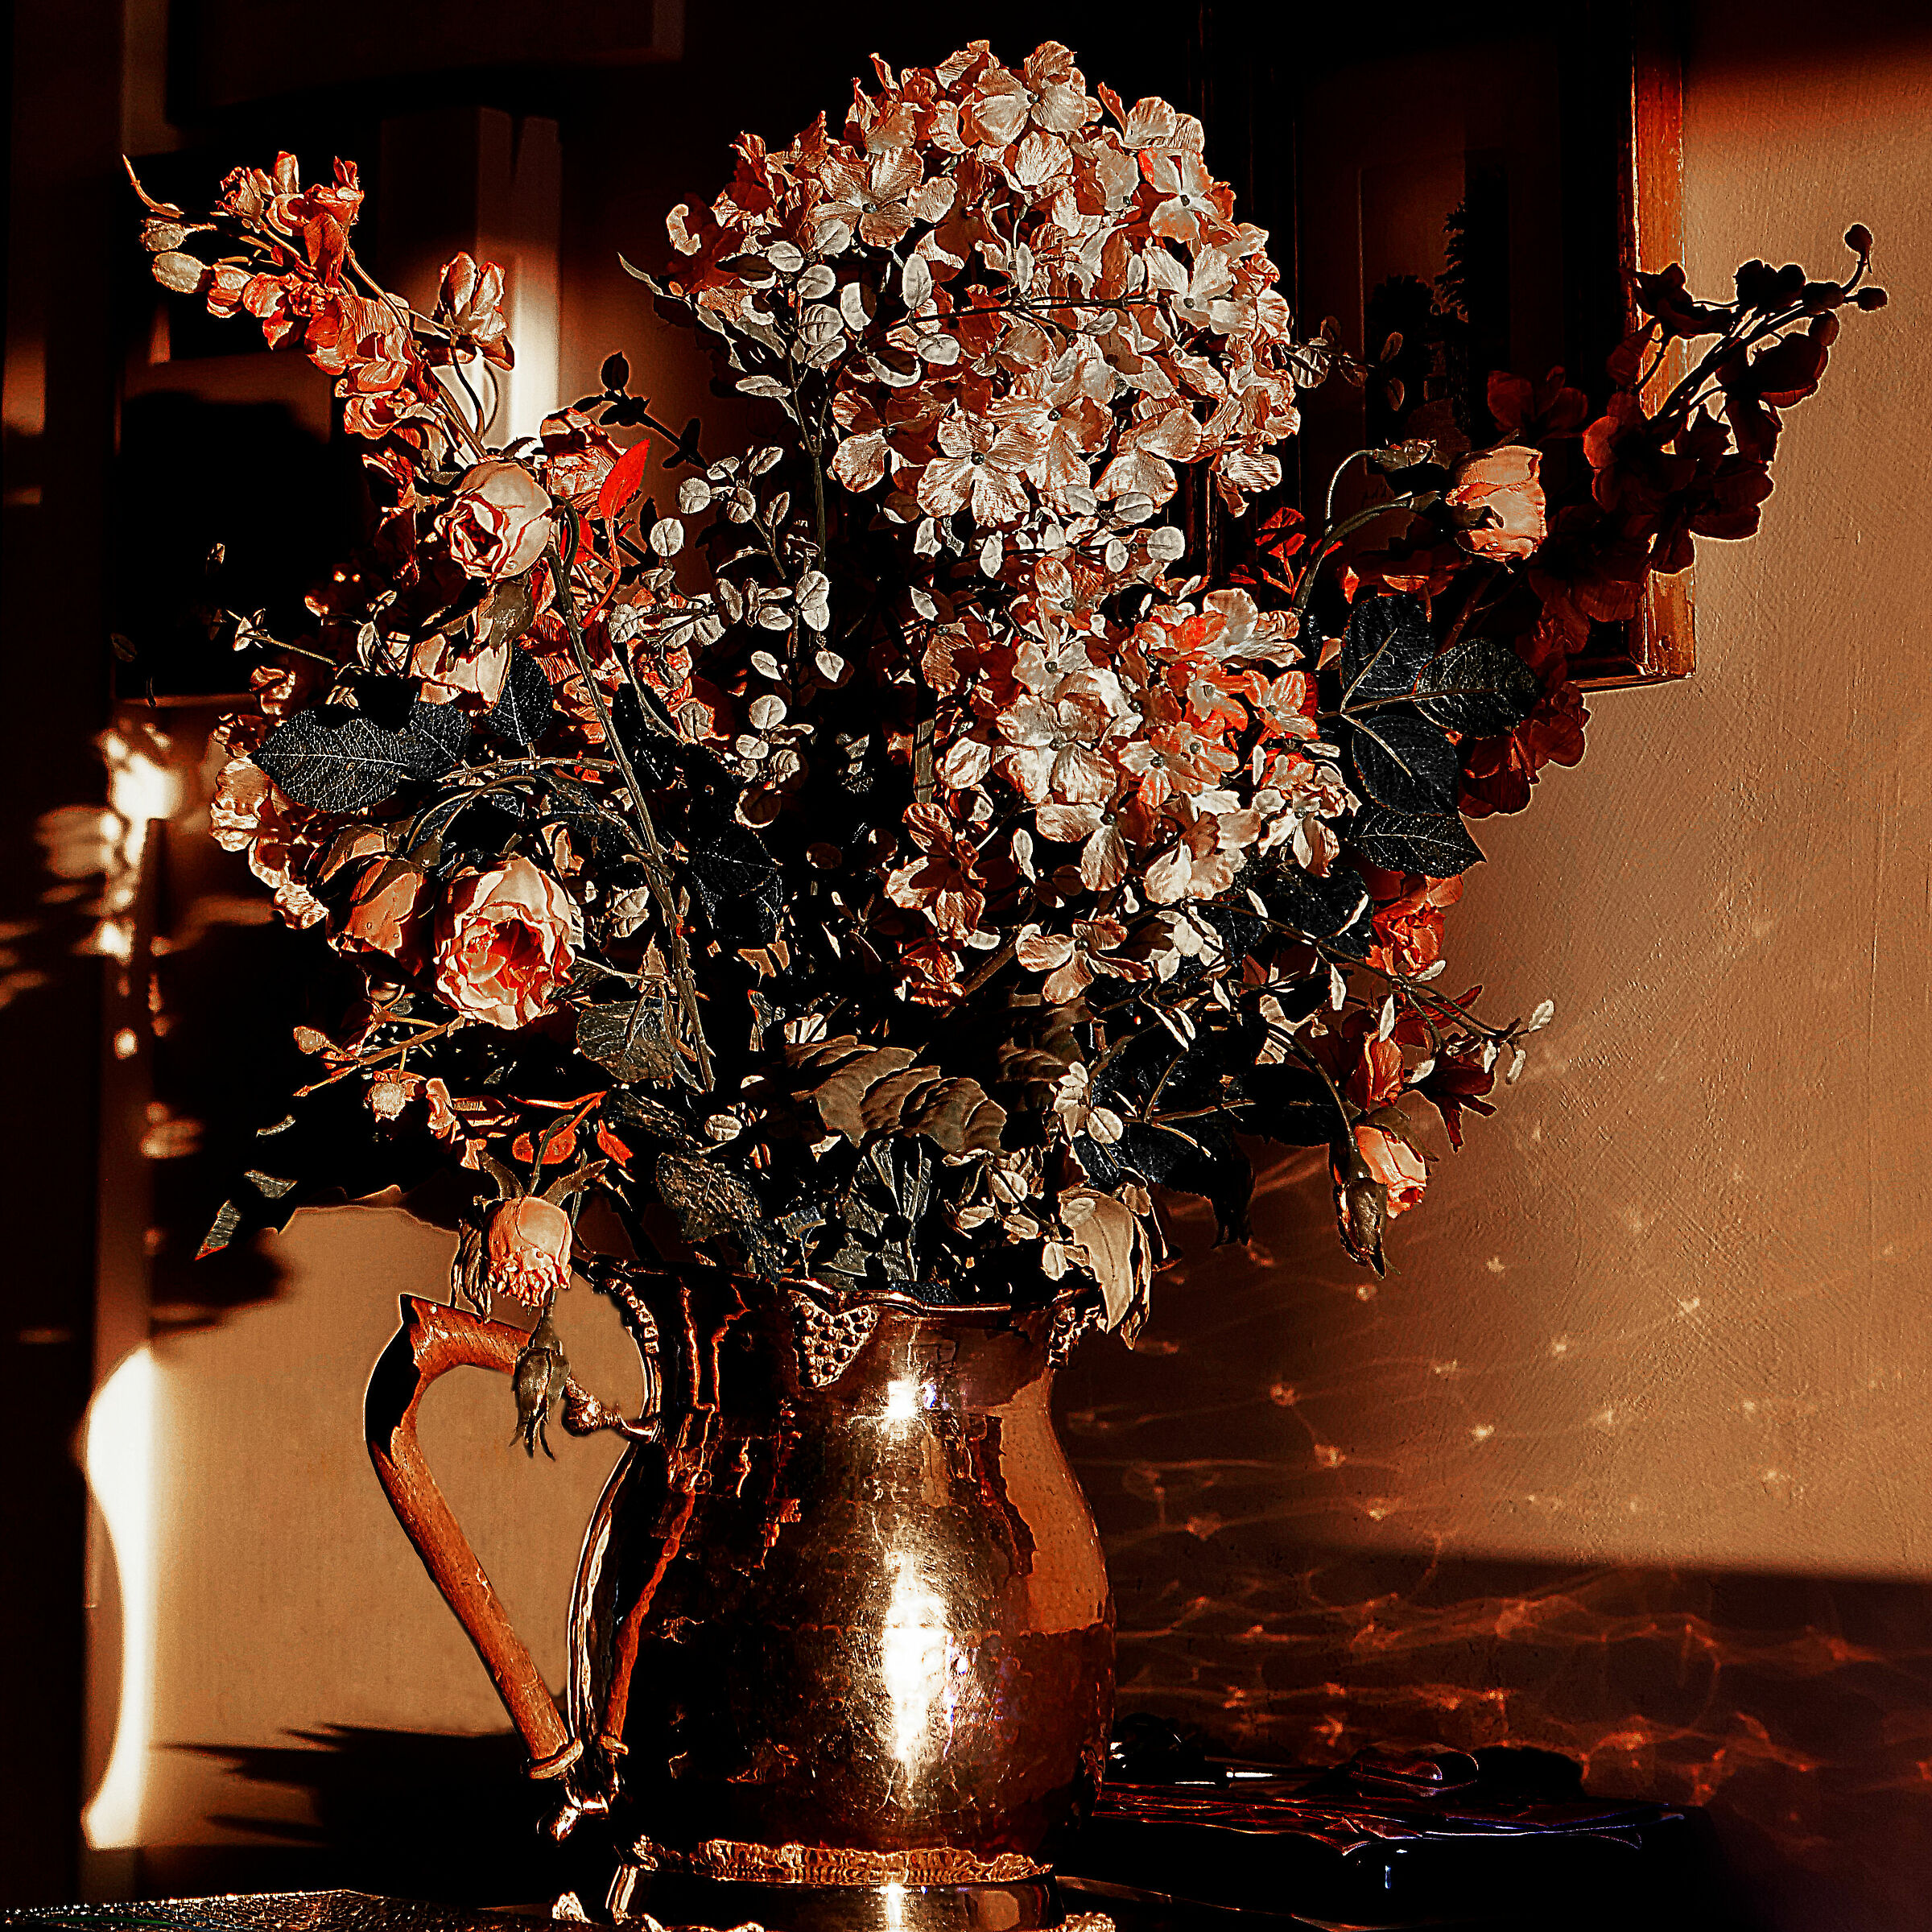 Vase of flowers...